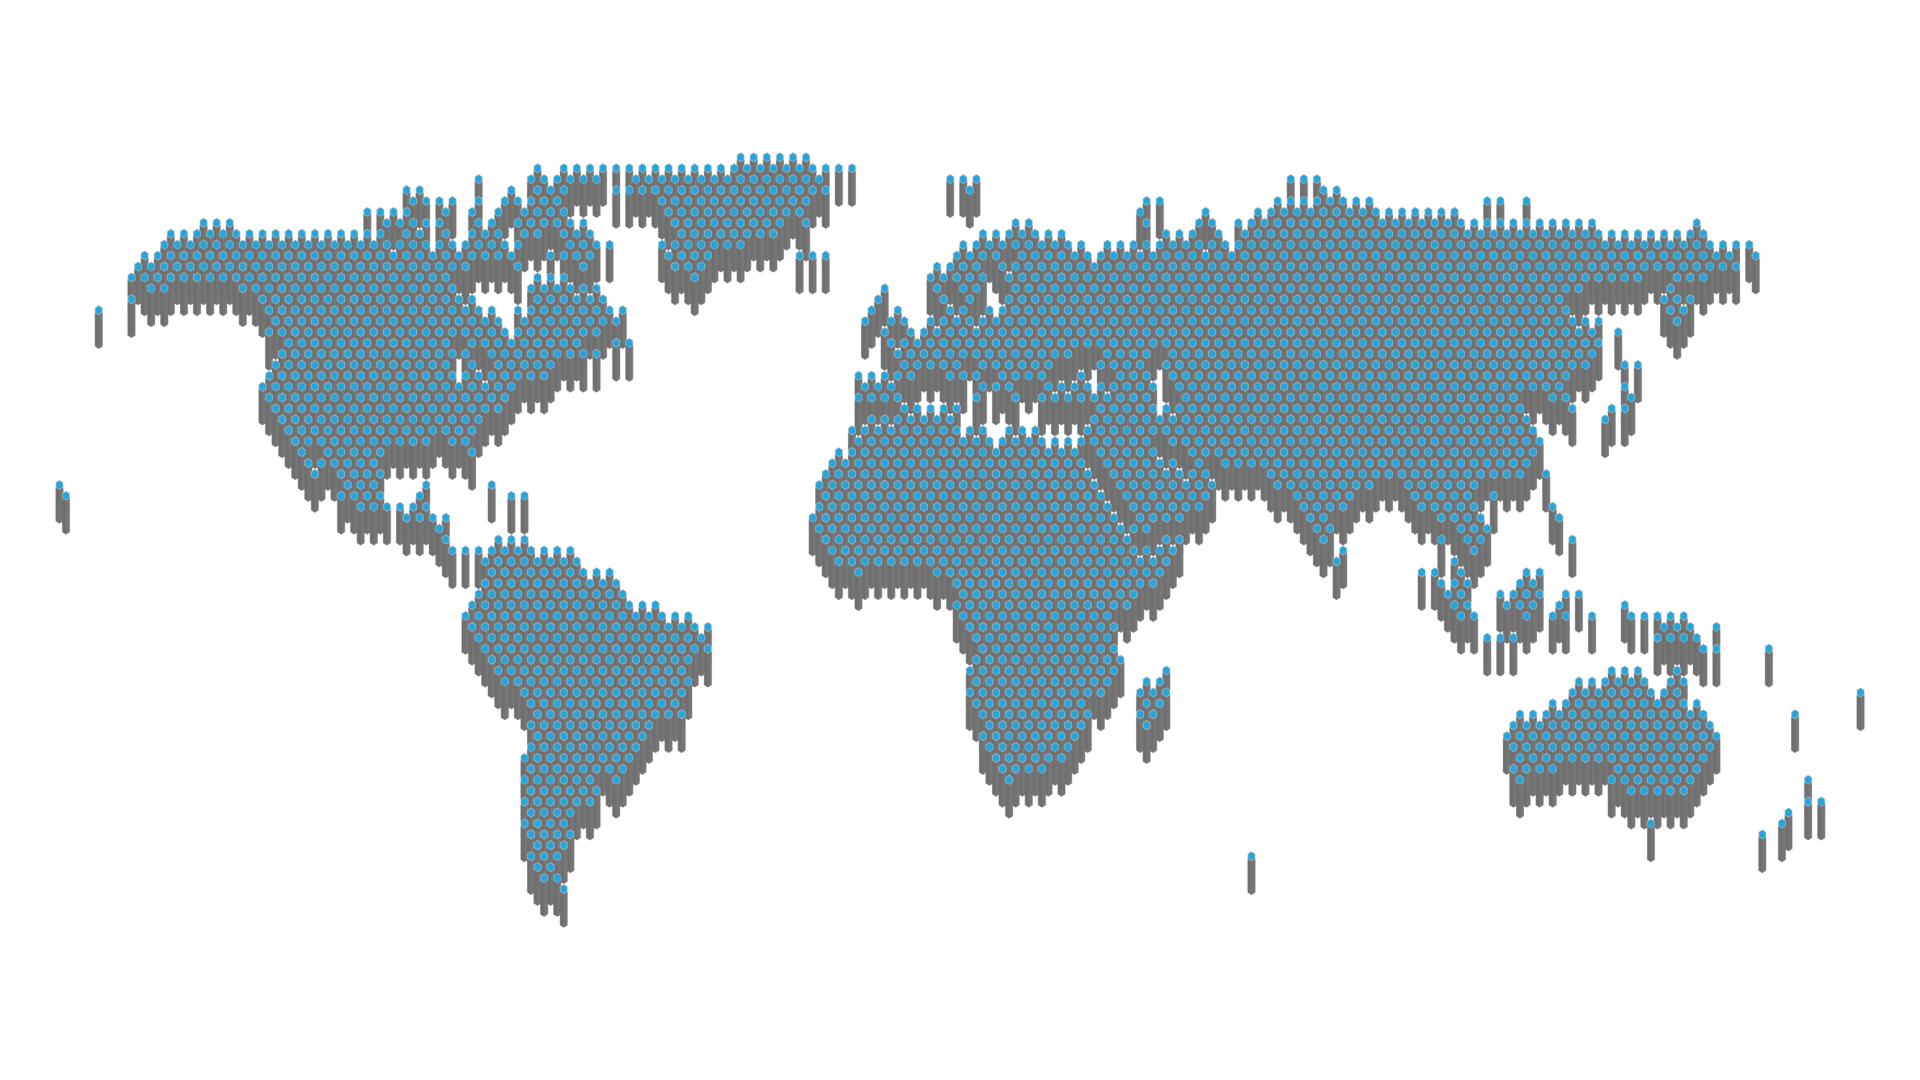 plantilla-de-mapa-mundial-con-continentes-am-rica-del-norte-y-del-sur